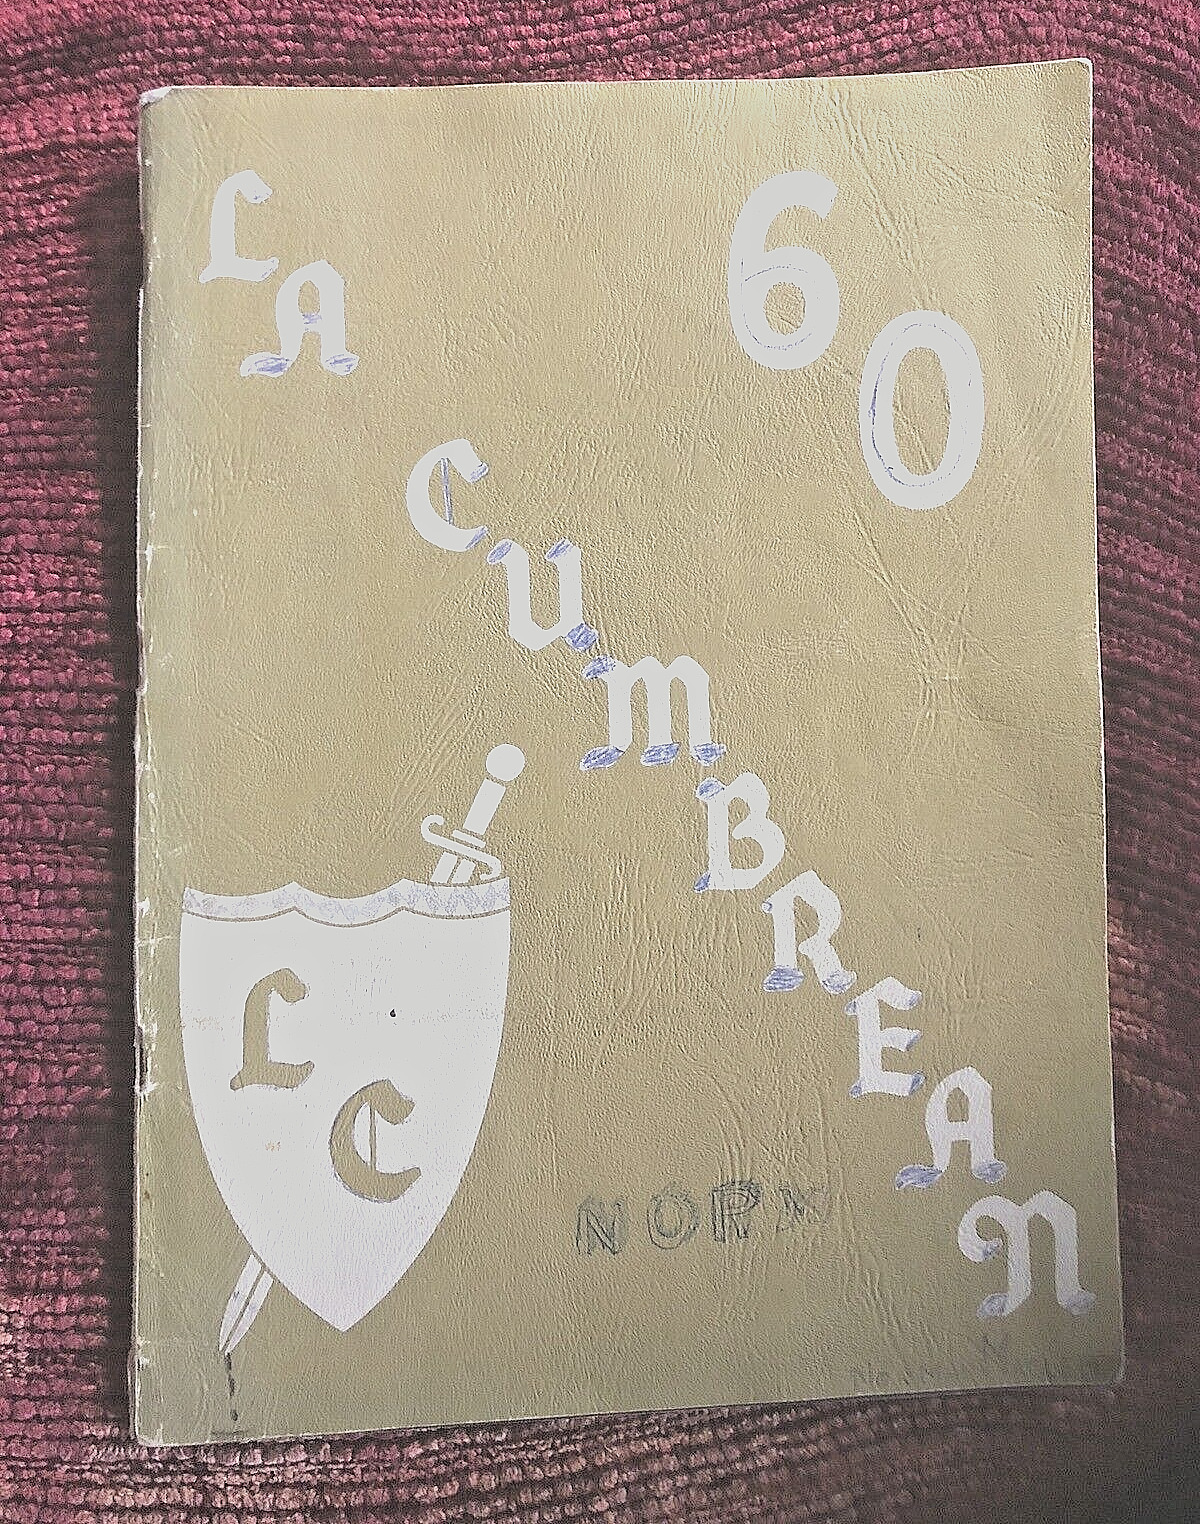 LA CUMBRE JR HIGH SCHOOL (SANTA BARBARA) 1960 YEARBOOK